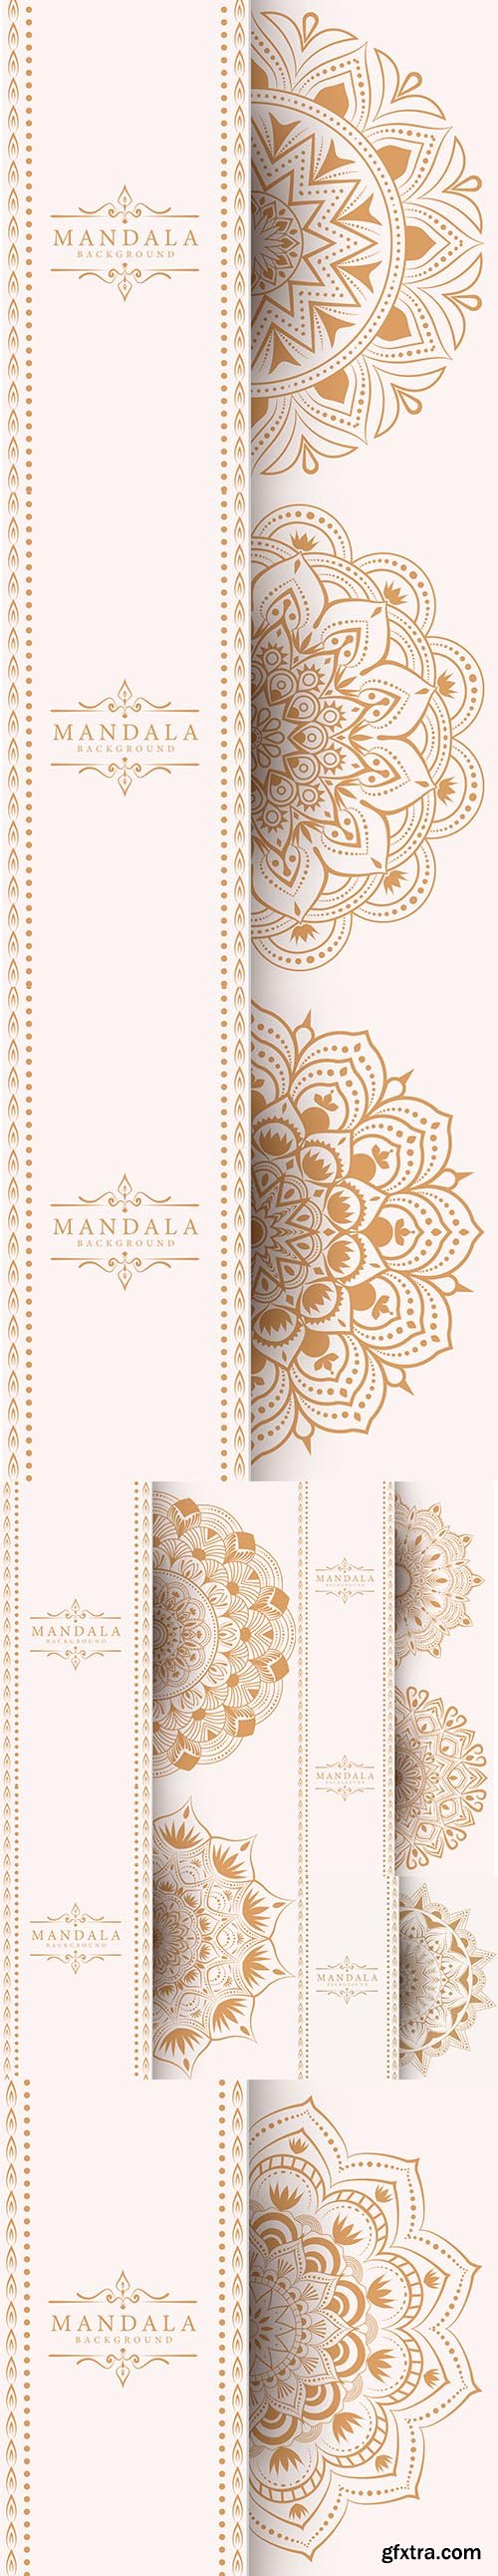 Creative Luxury Mandala Background Set